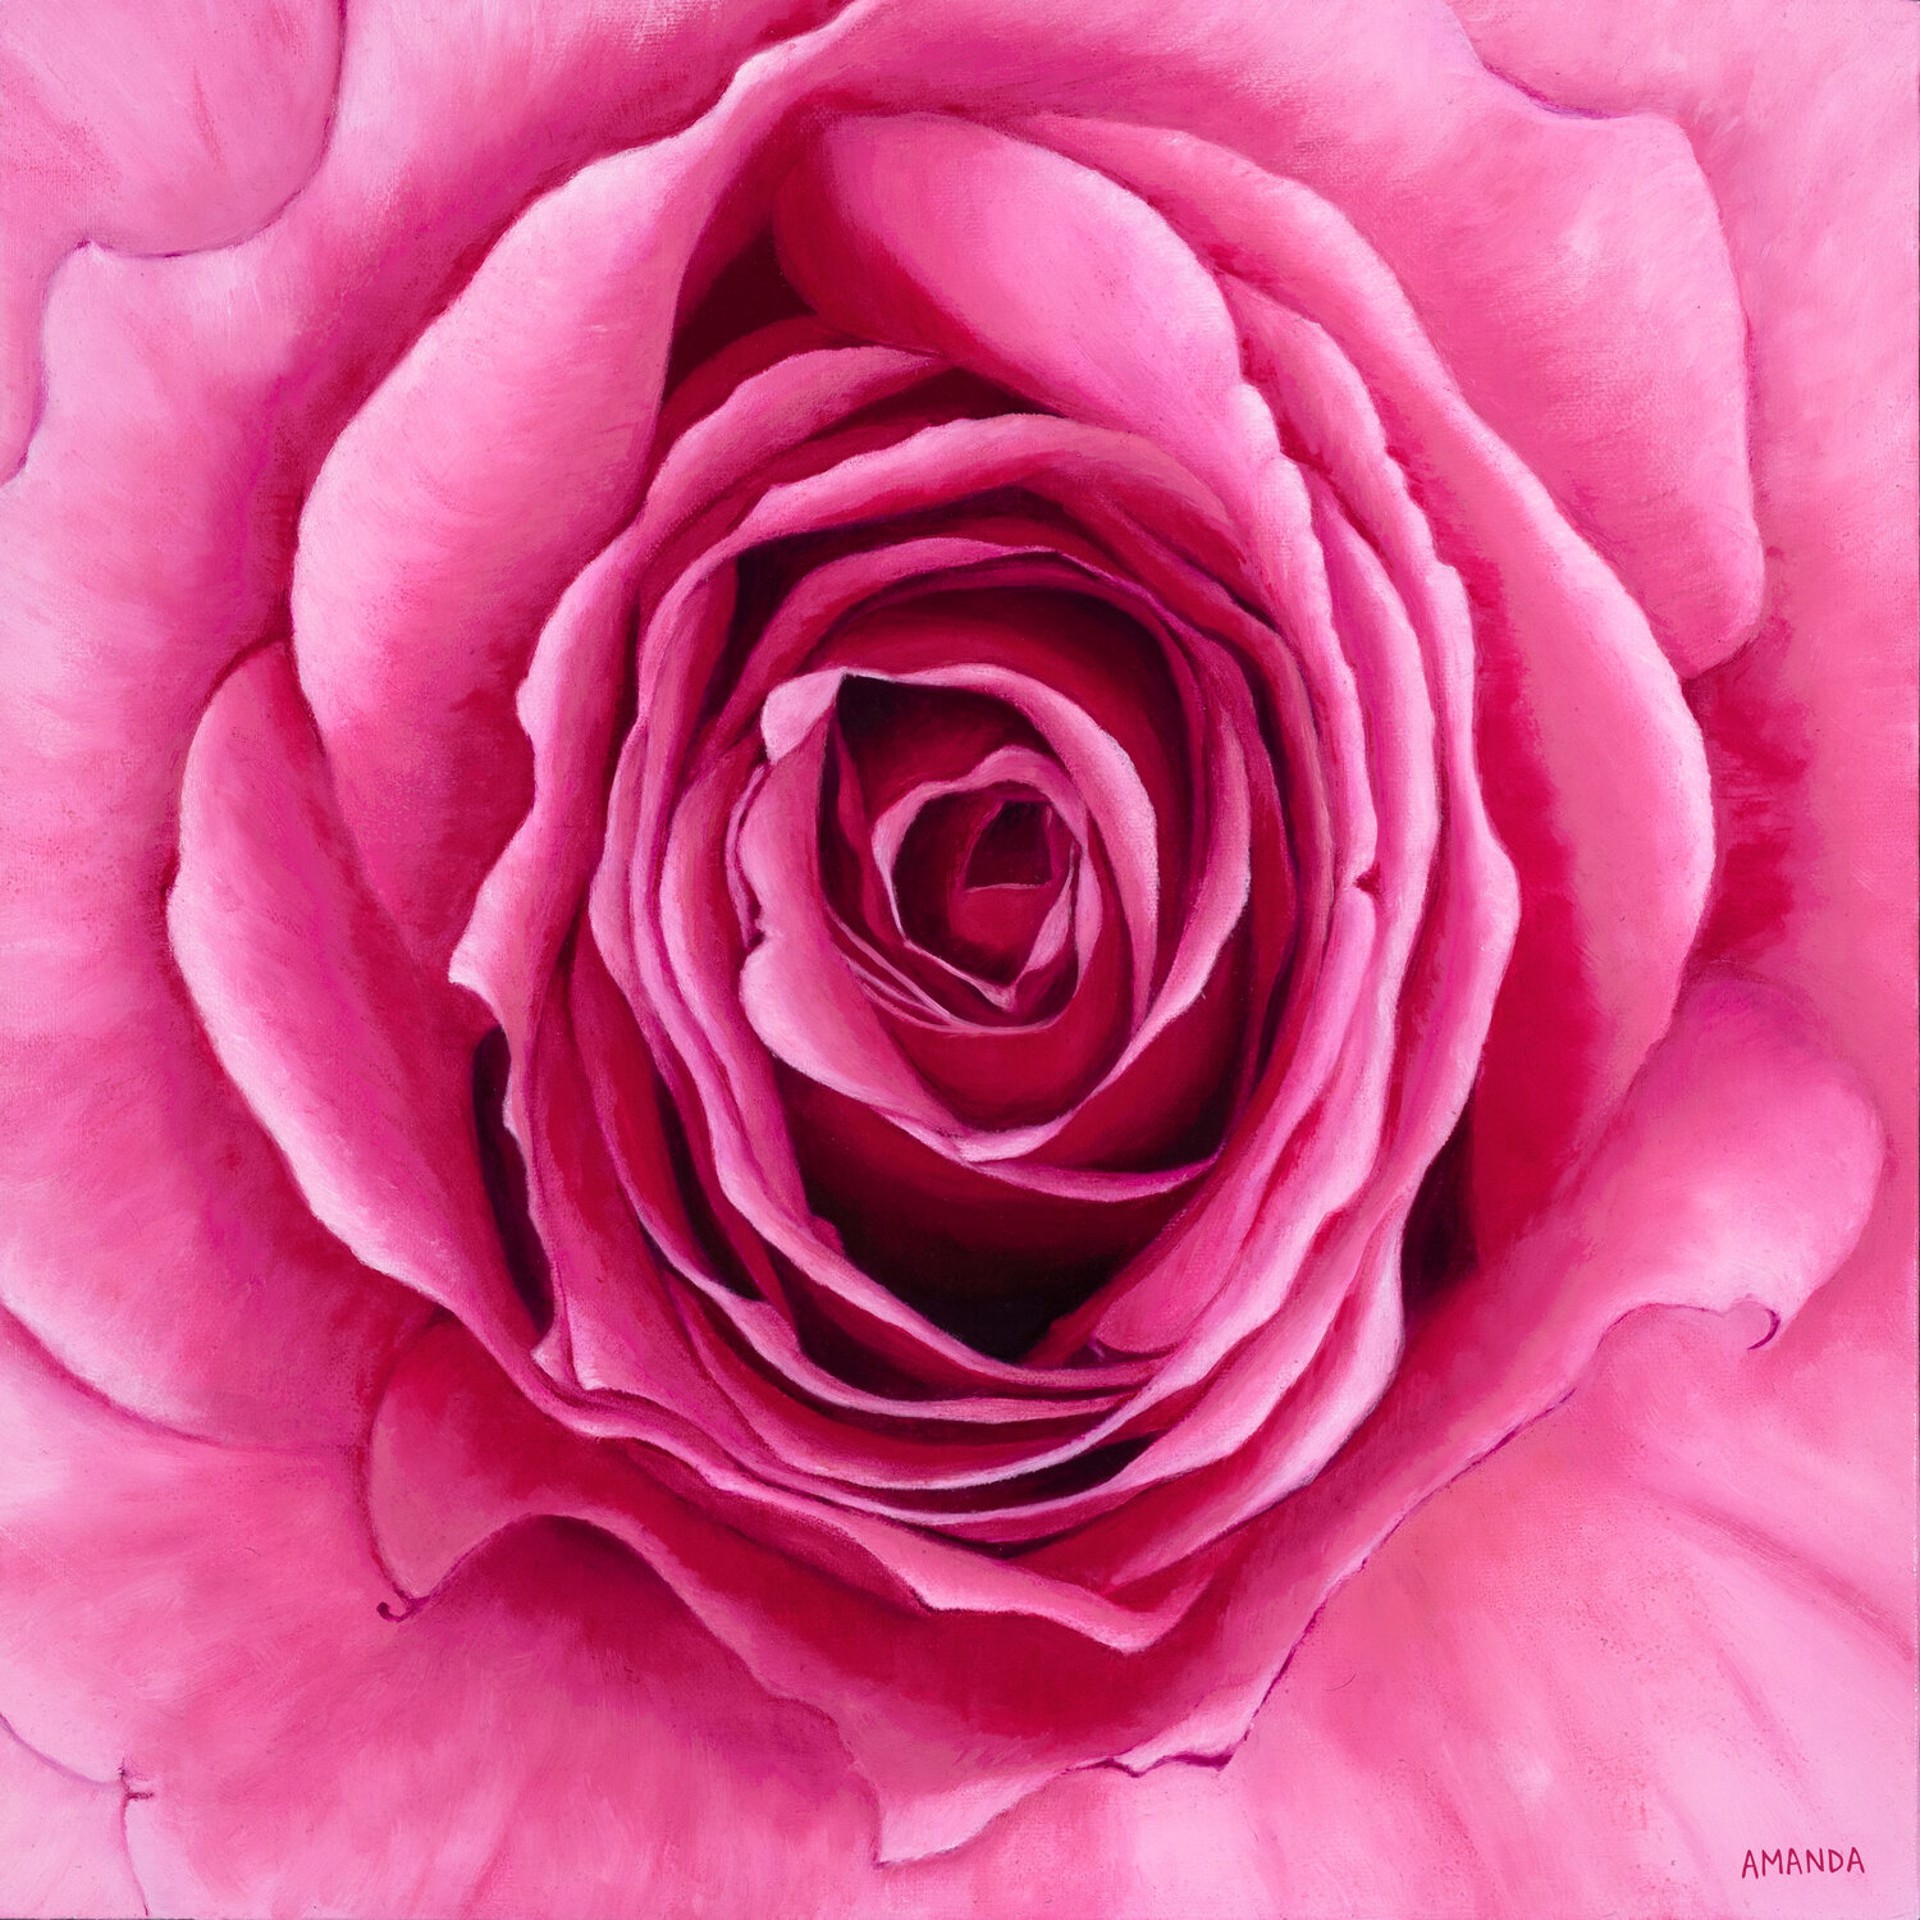 Carolyn's Rose by Amanda Coelho